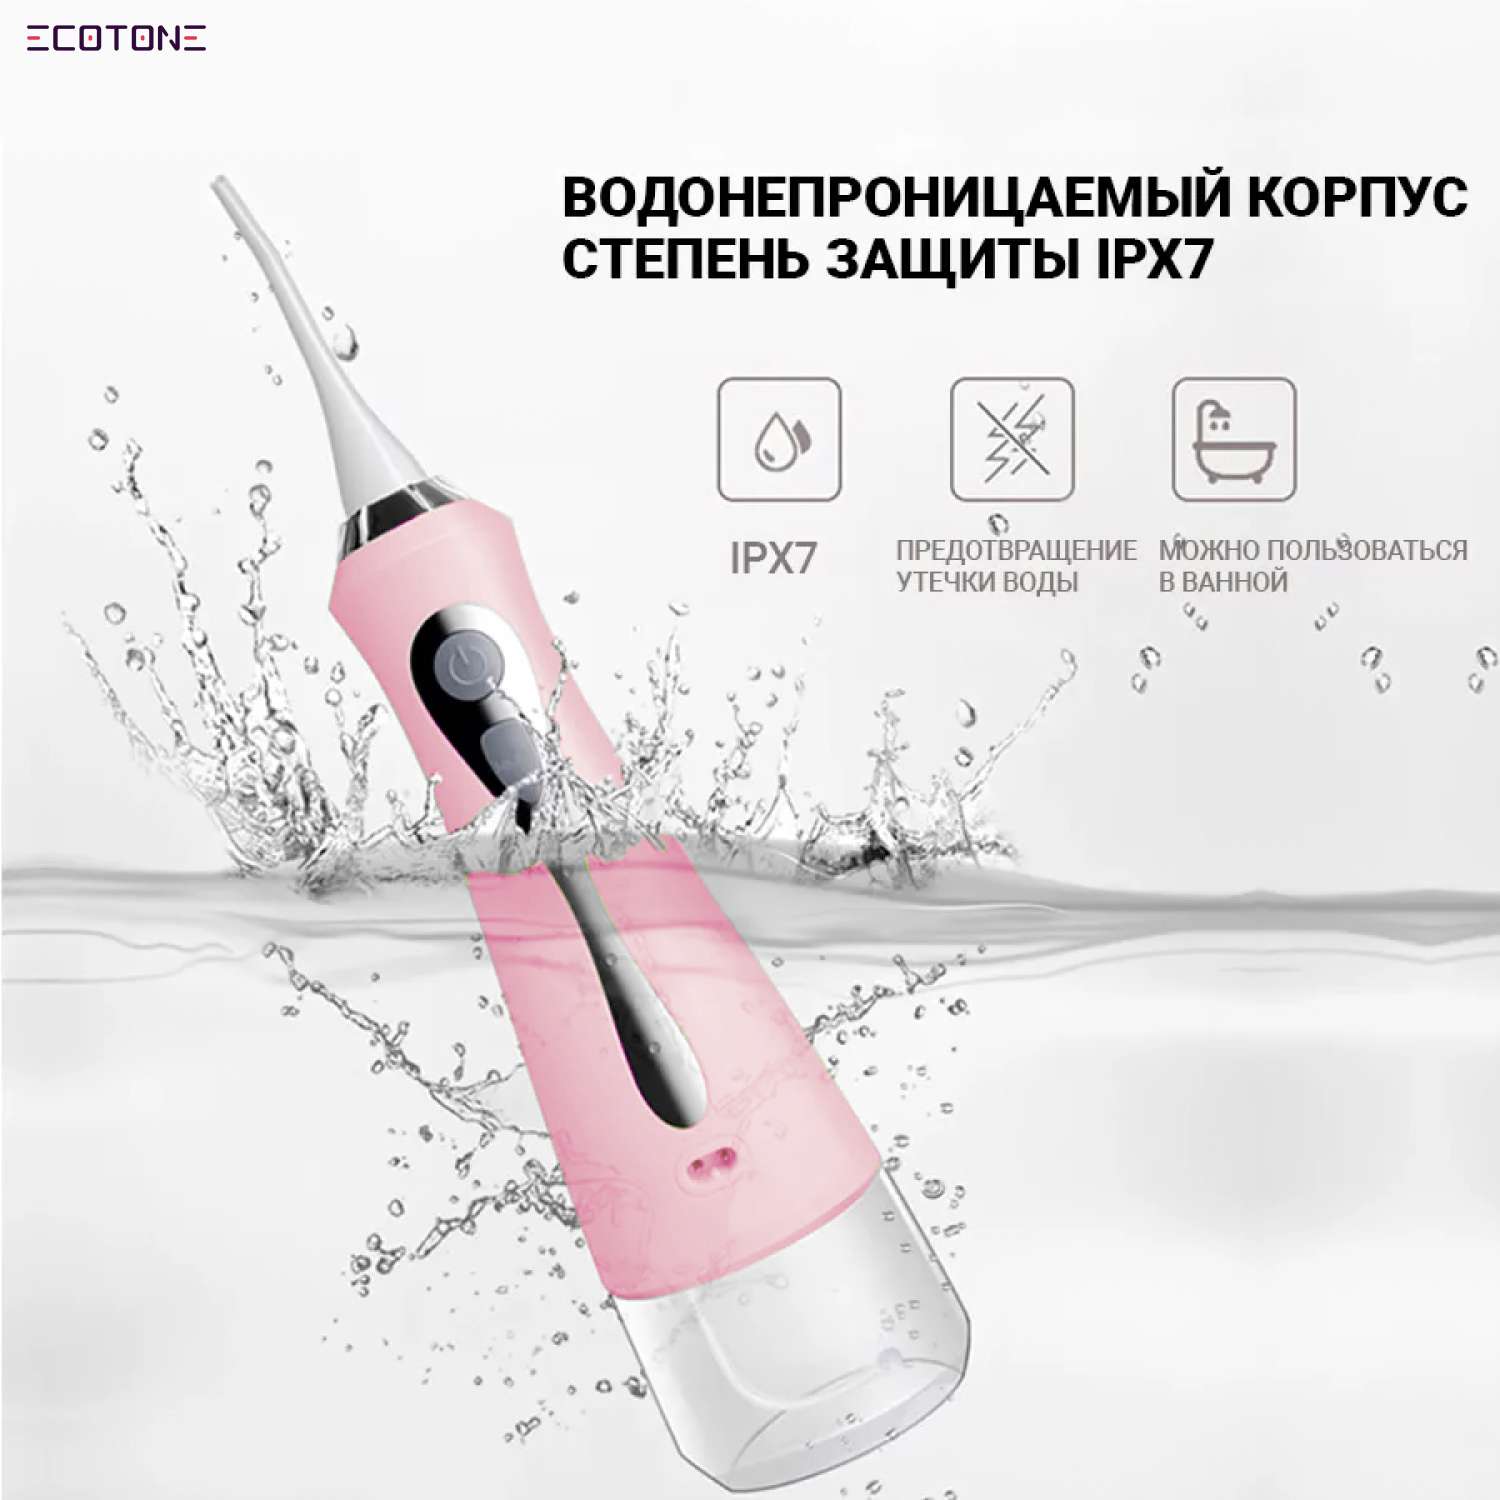 Ирригатор Ecotone электрический для очистки полости рта Fresh / розовый - фото 3